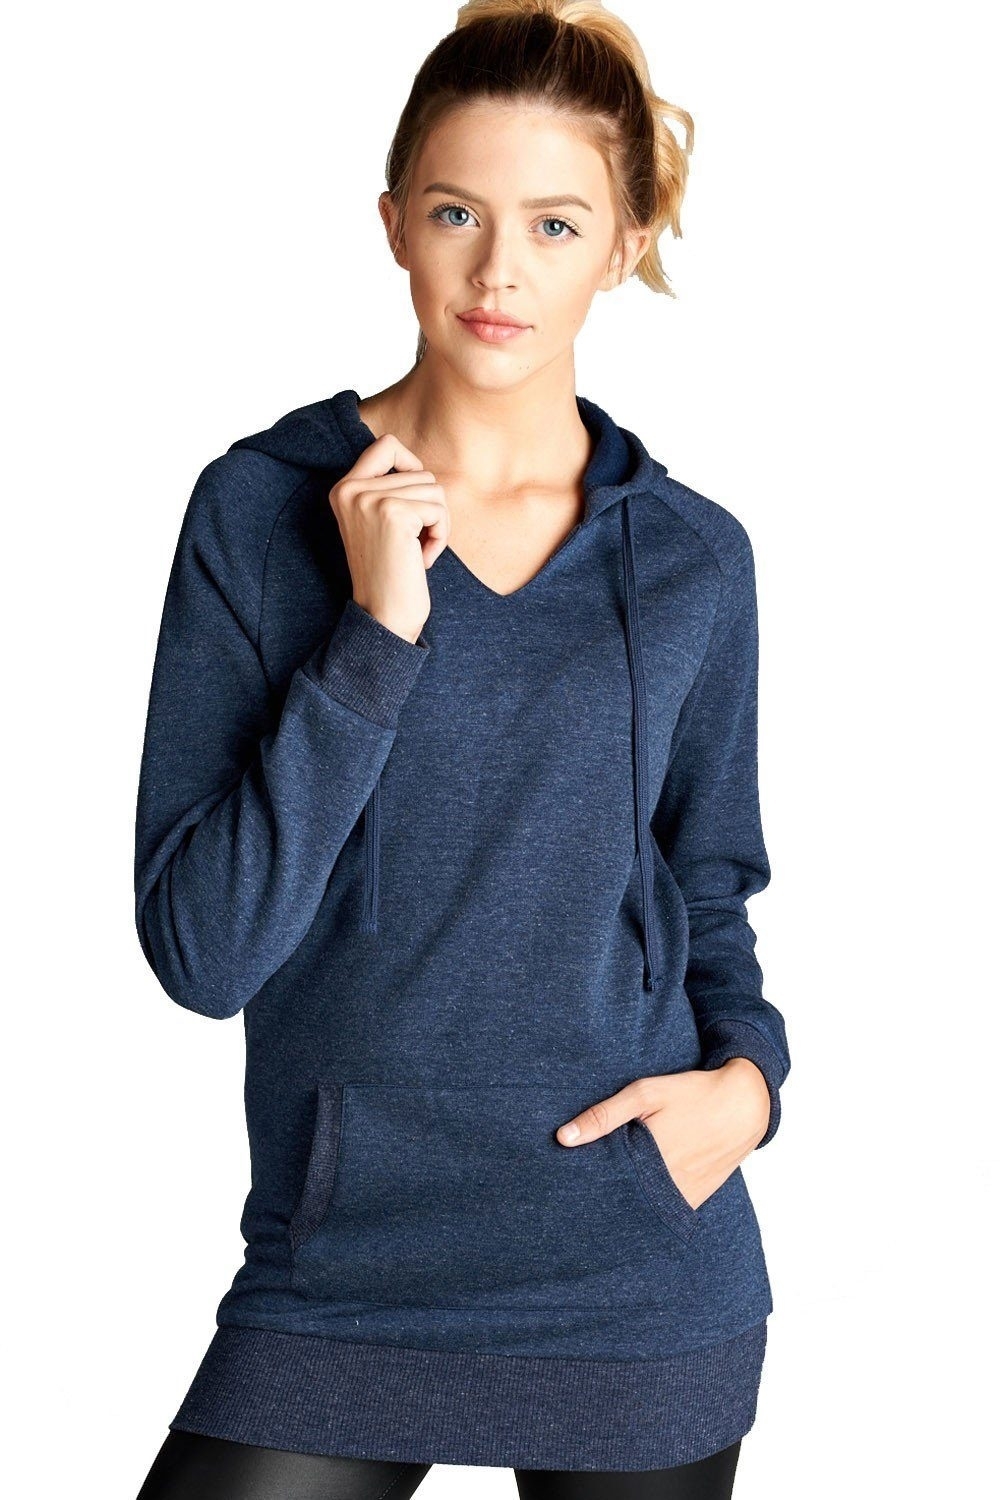 Raglan Long Sleeve Pullover Hoodie Sweatshirt in Heather Navy - Large, Heather Navy